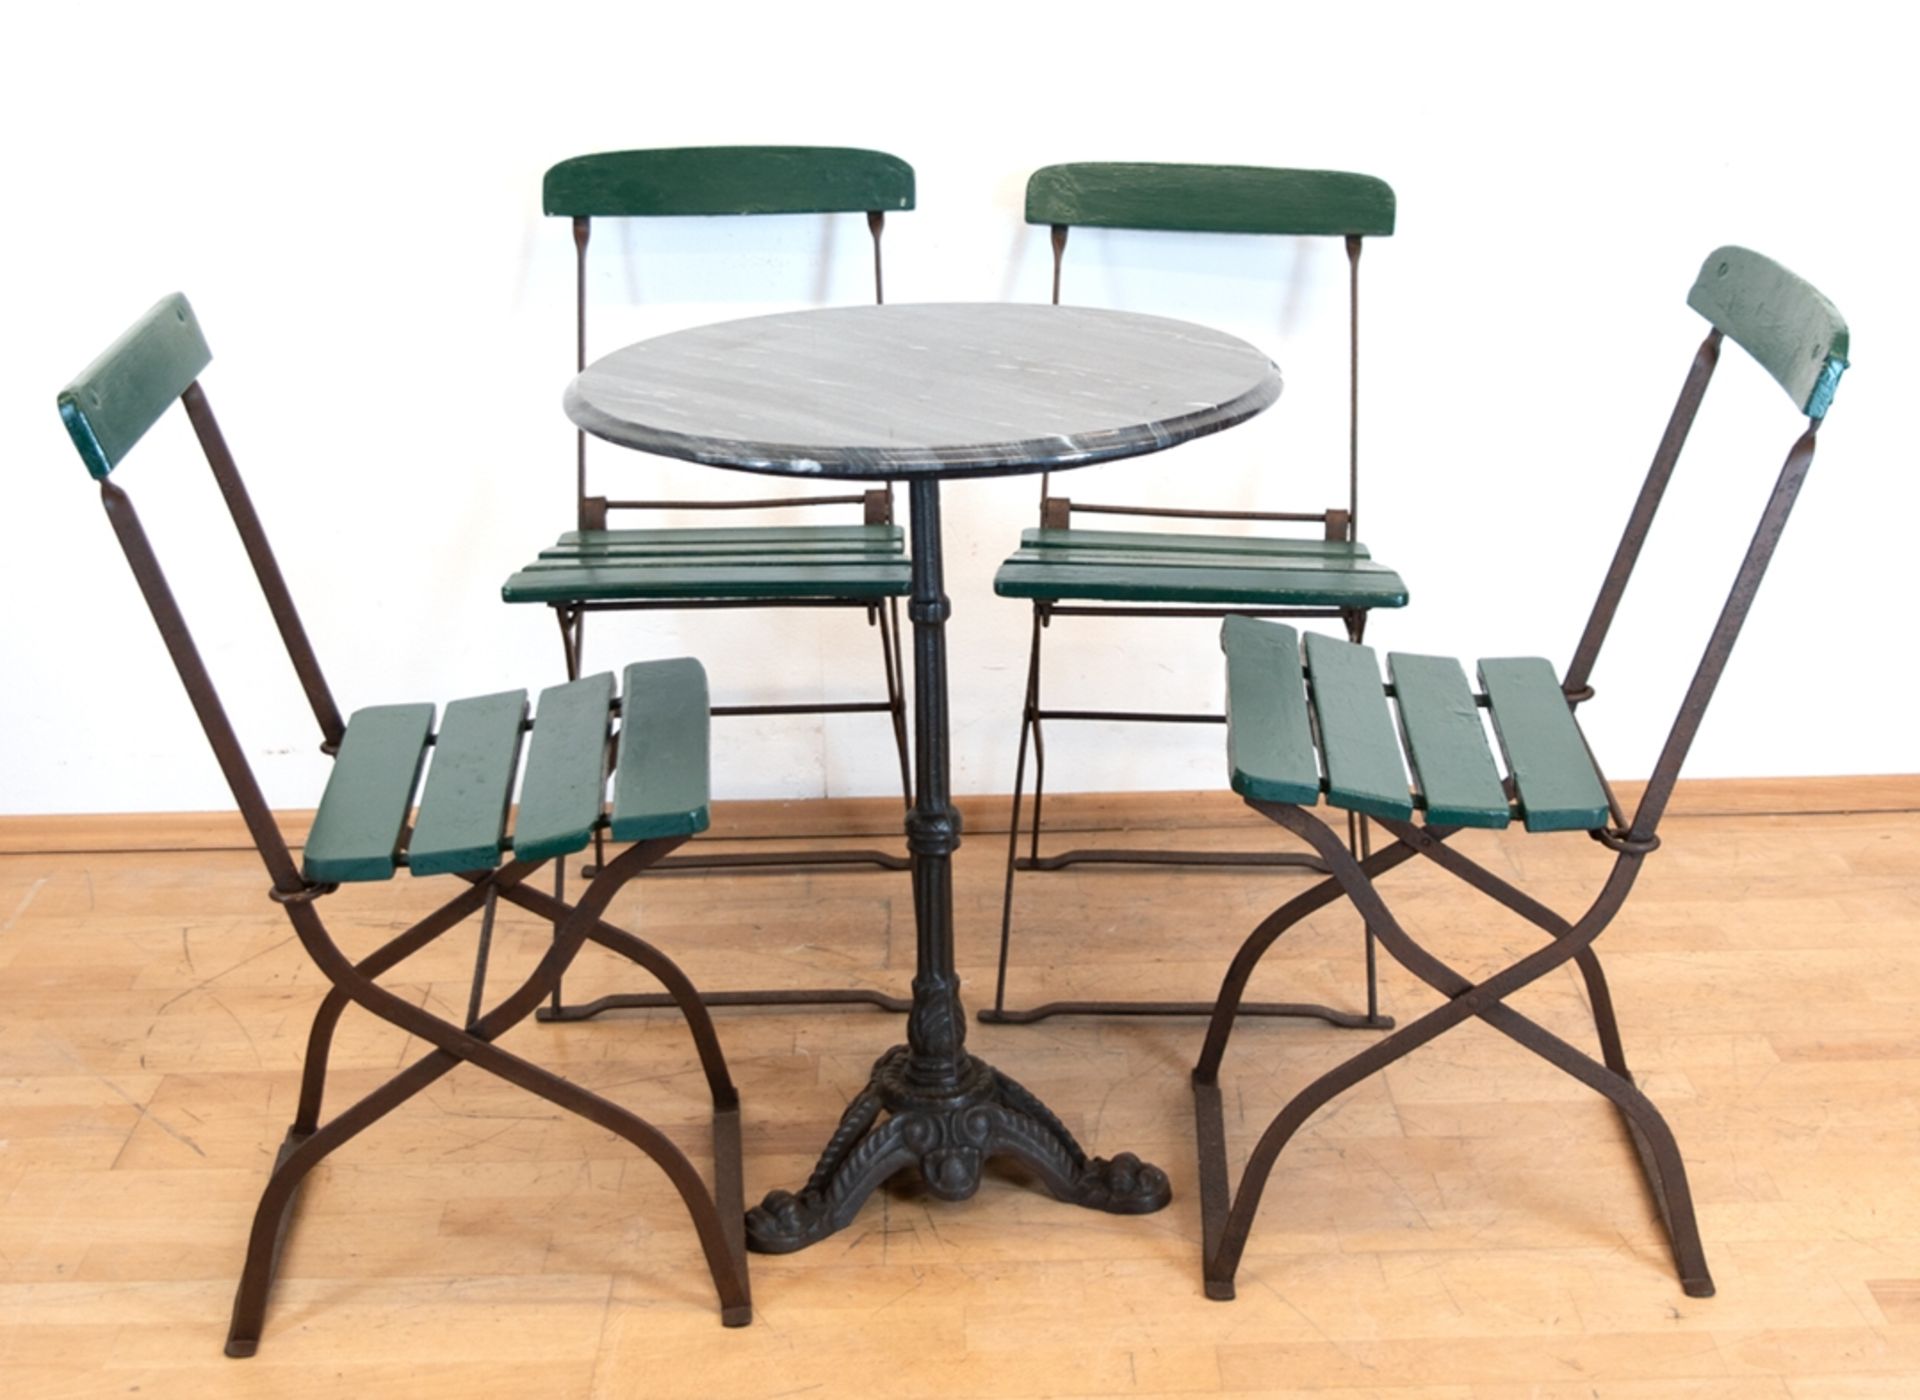 Tisch mit 4 Gartenstühlen, Tisch mit gußeisernem Fußgestell mit Mittelsäule, runde marmorierte Plat